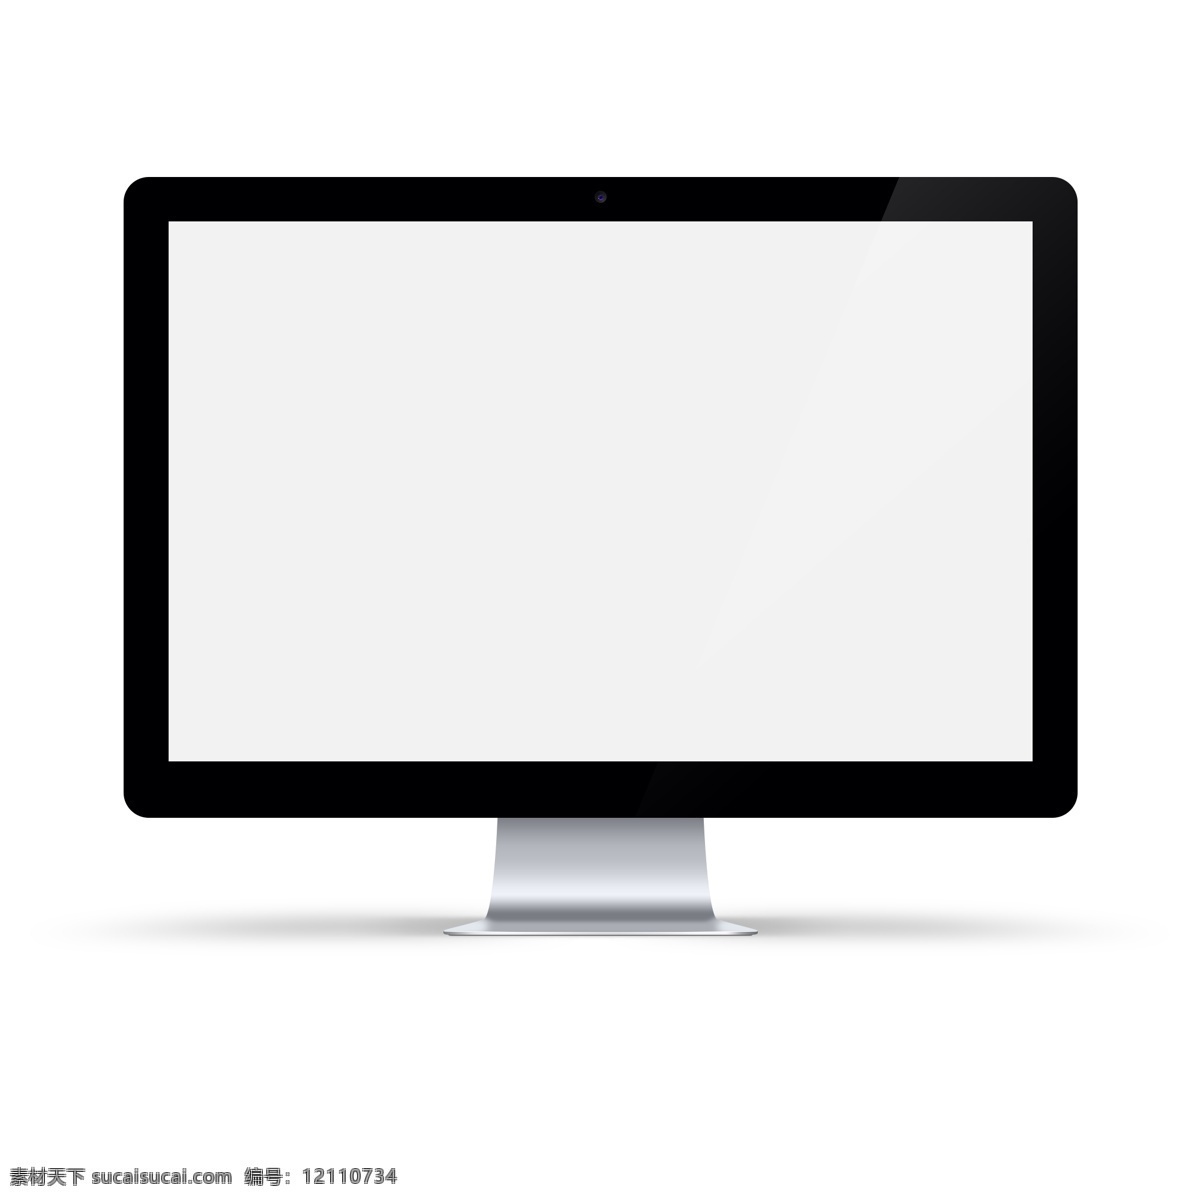 手绘 银色 底座 电脑 屏幕 手绘电脑 手绘屏幕 电脑屏幕 苹果电脑 imac